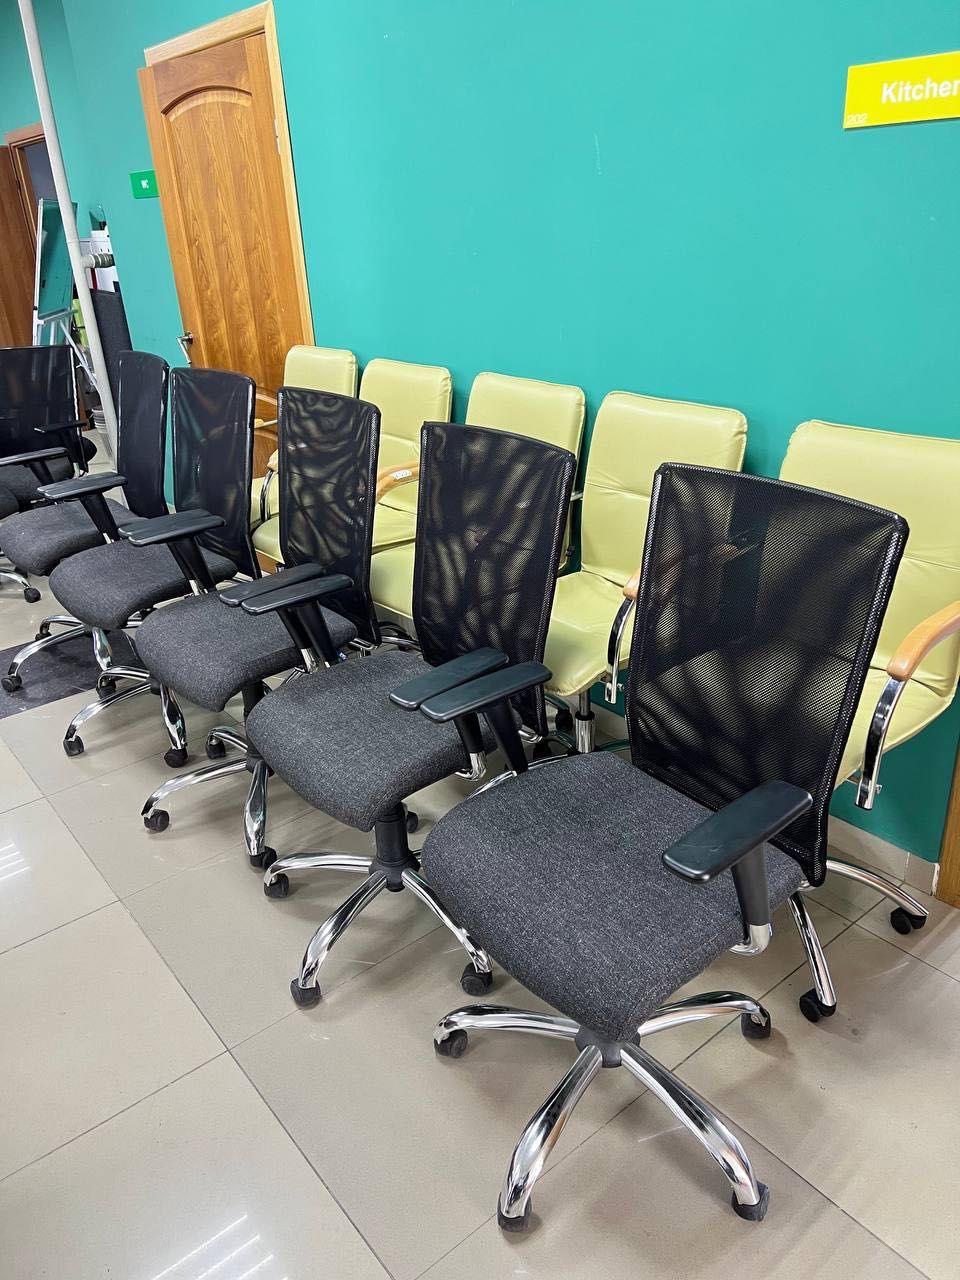 РОЗПРОДАЖ офісної меблі крісла стільці комп’ютерні офісні конференц